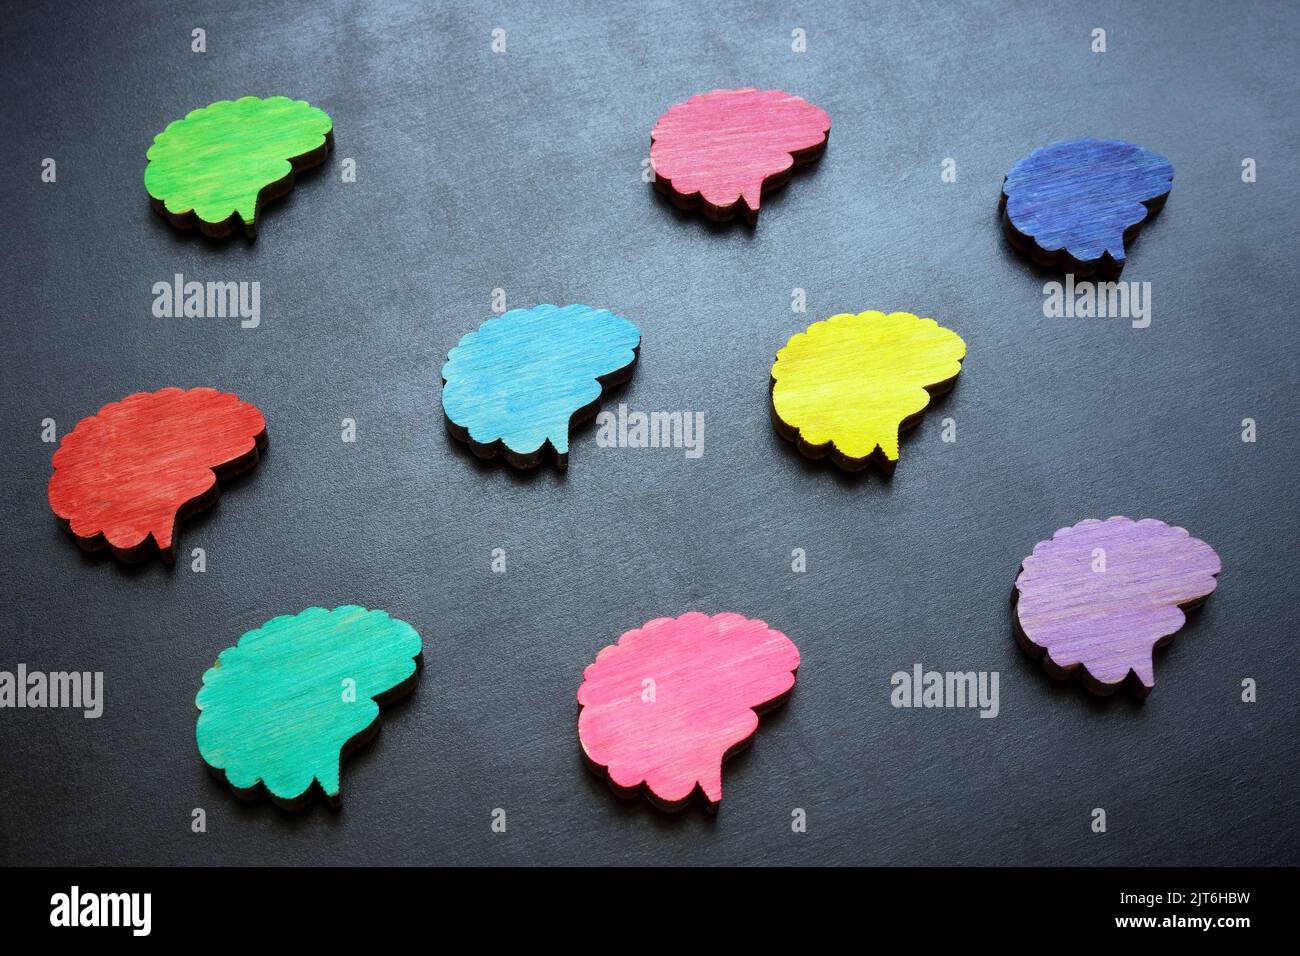 Concepto de neurodiversidad. Figuras multicolor del cerebro en una superficie oscura. Foto de stock